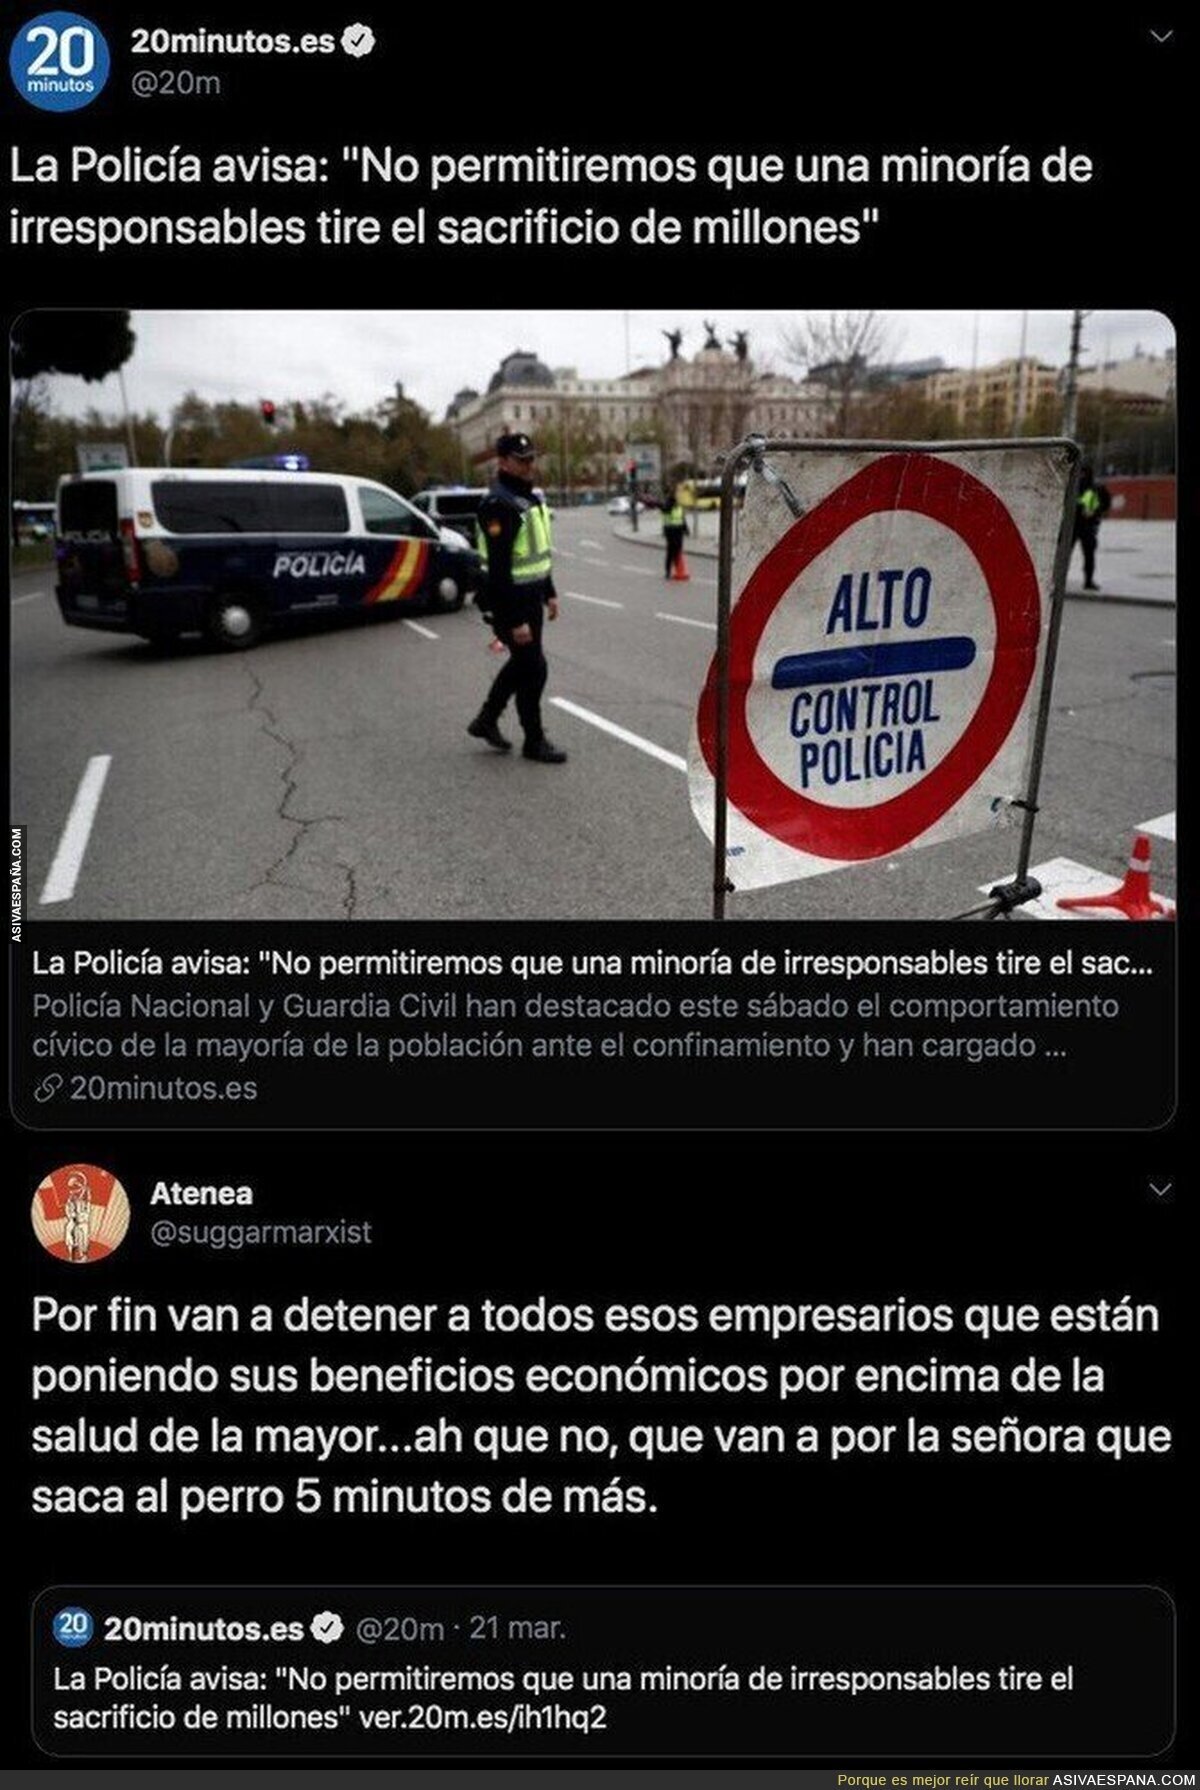 Por fin se va a hacer justicia en España